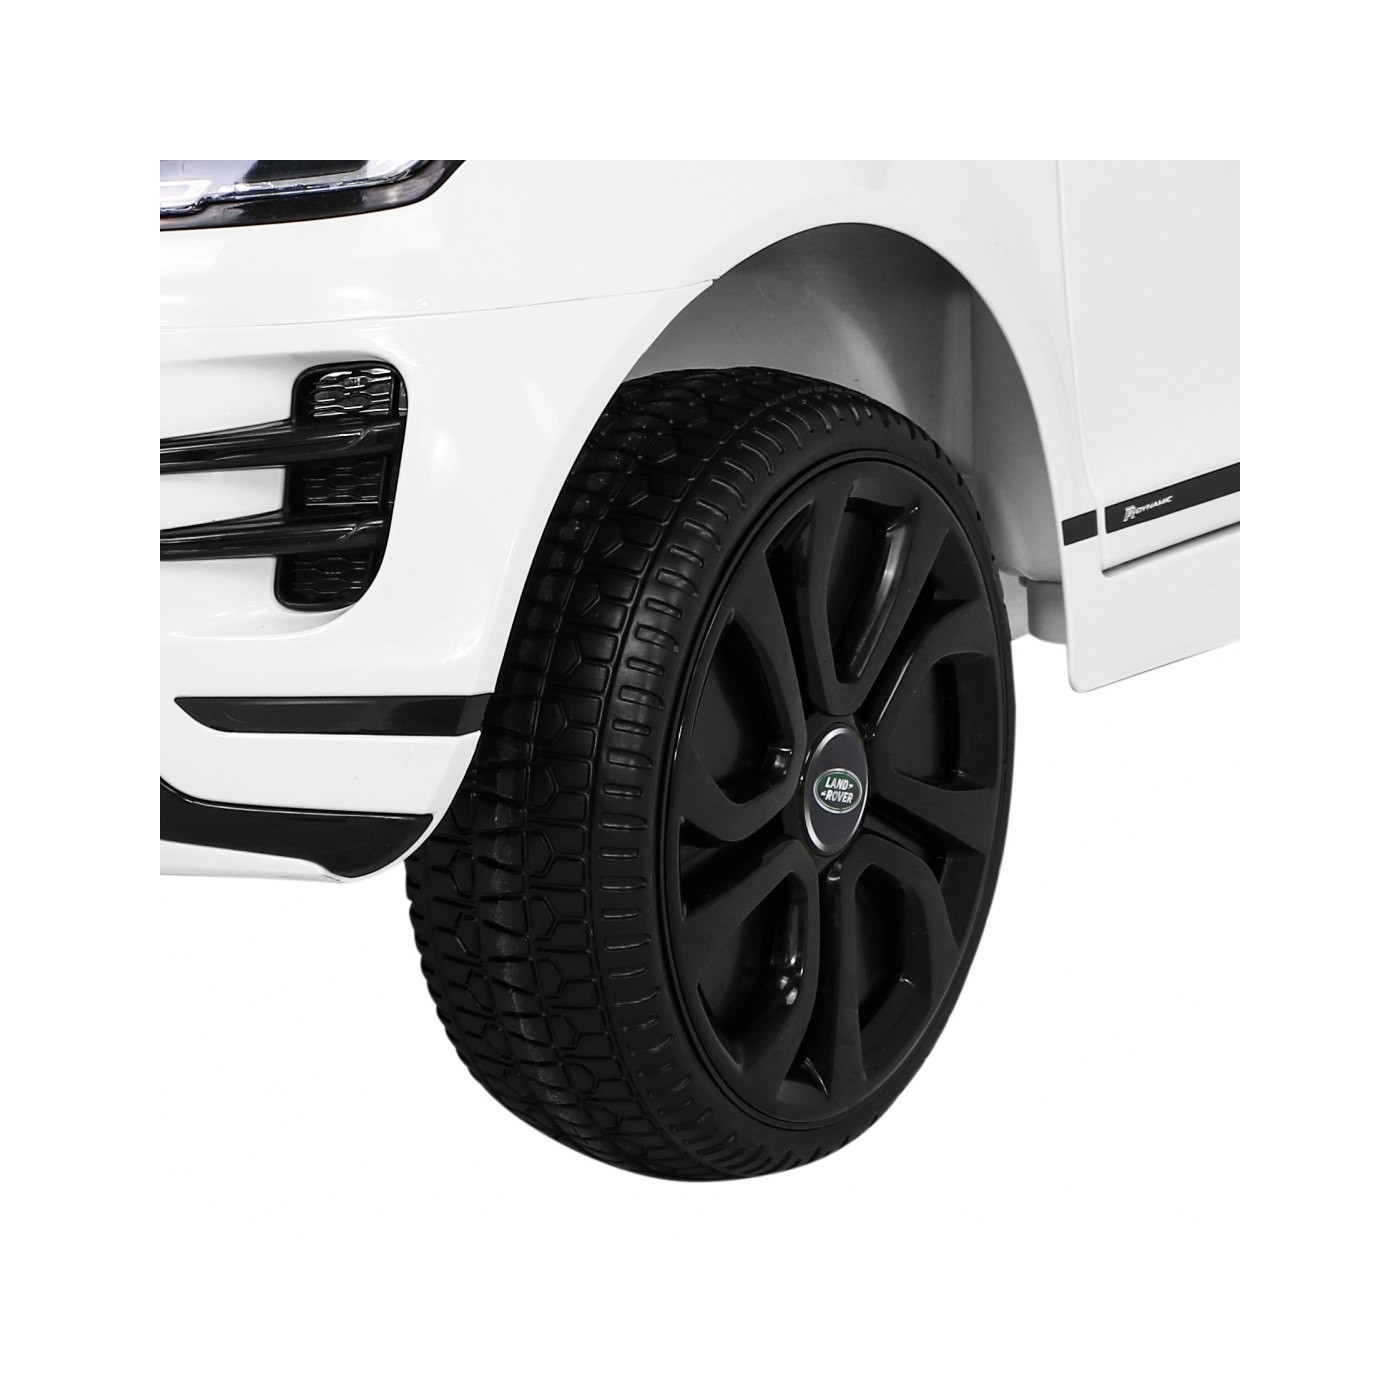 Pojazd Range Rover Evoque Biały